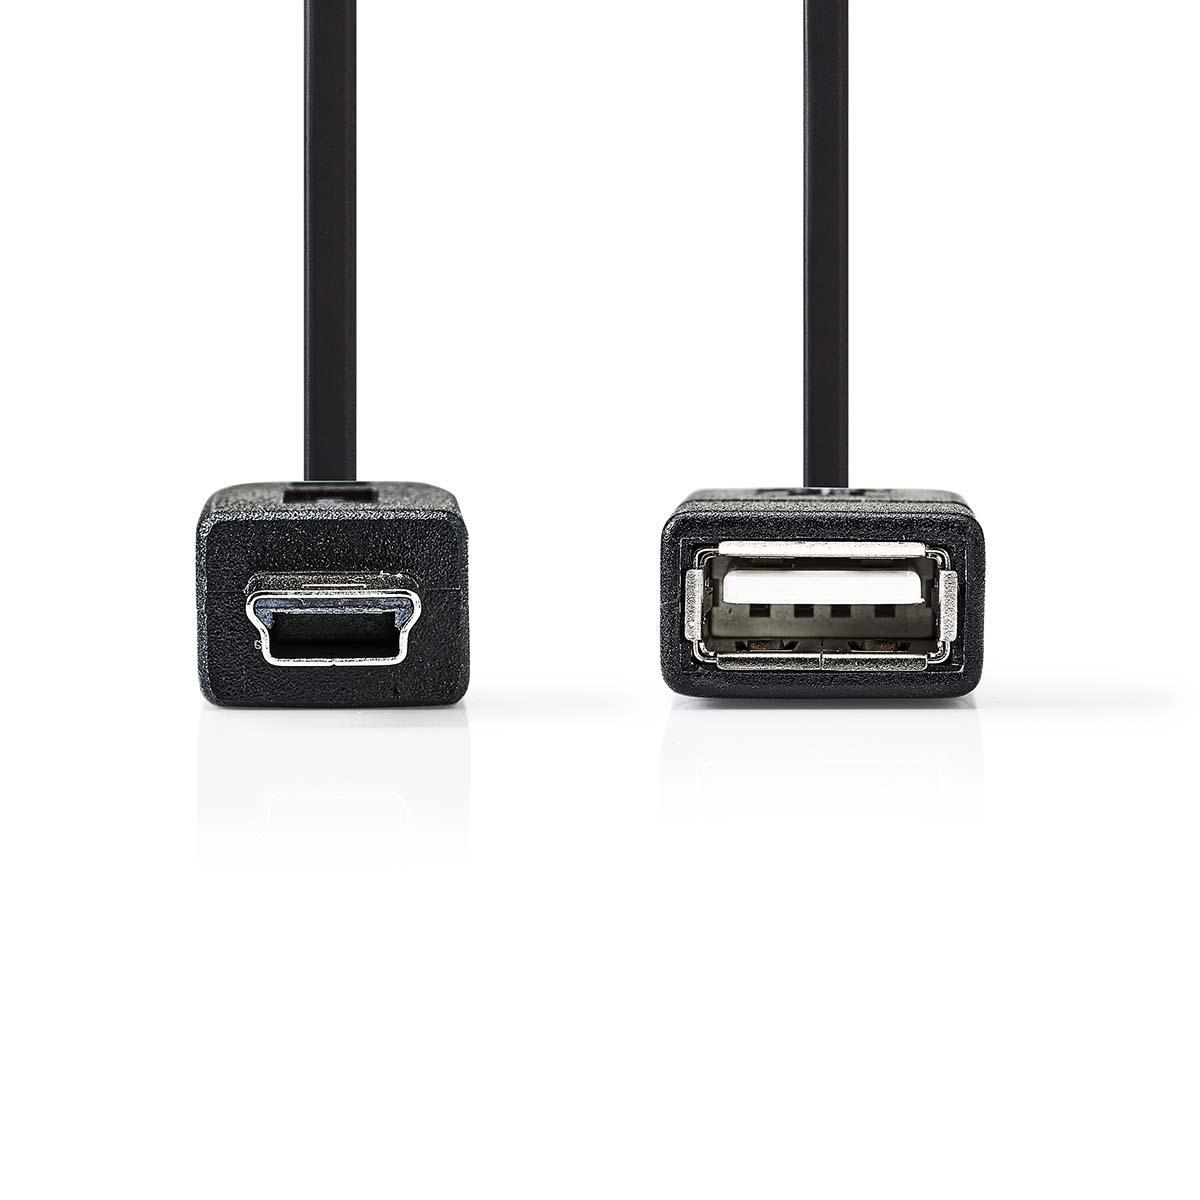 NEDIS CCGP60315BK02 USB Micro-B Adapter